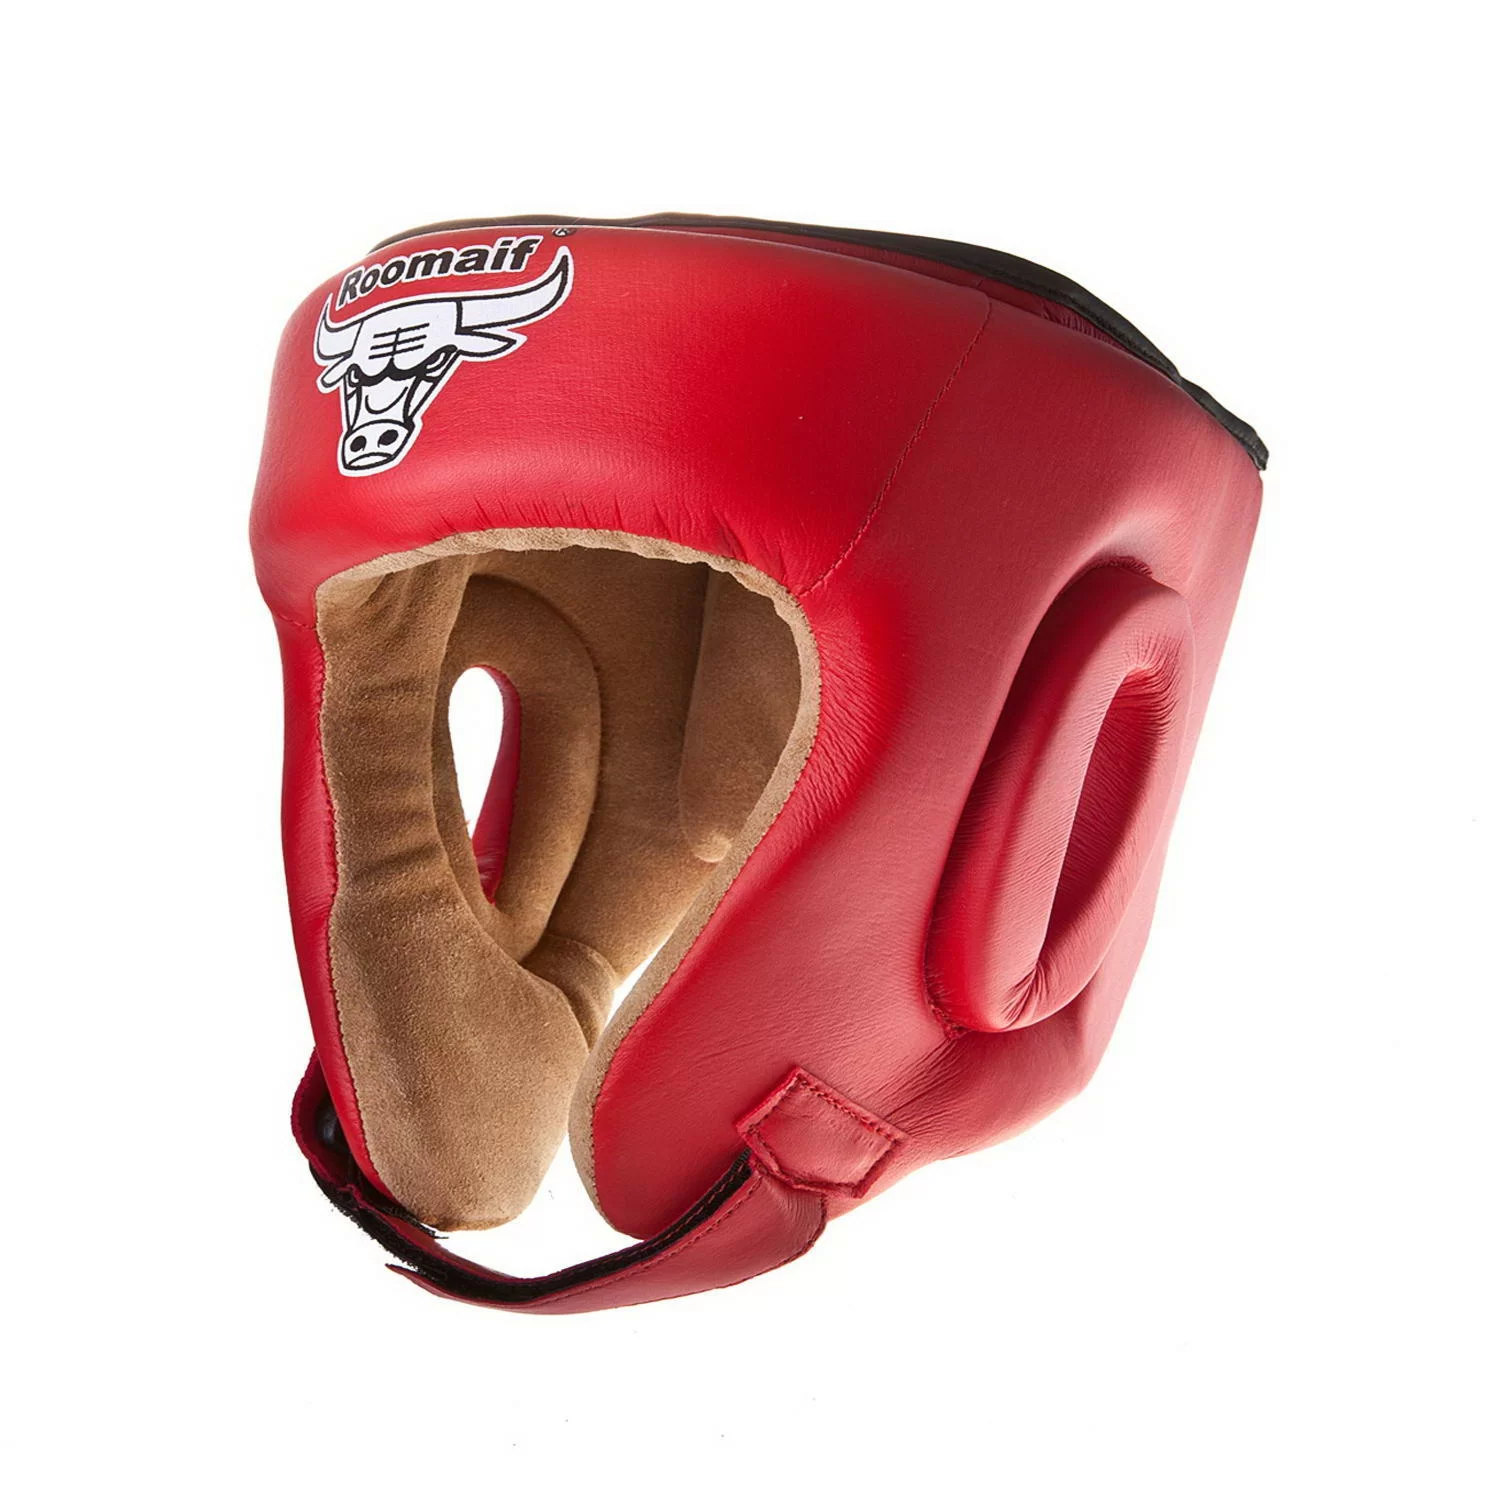 Фото Шлем боксерский Roomaif RHG-146 PL защитный красный со склада магазина СпортСЕ